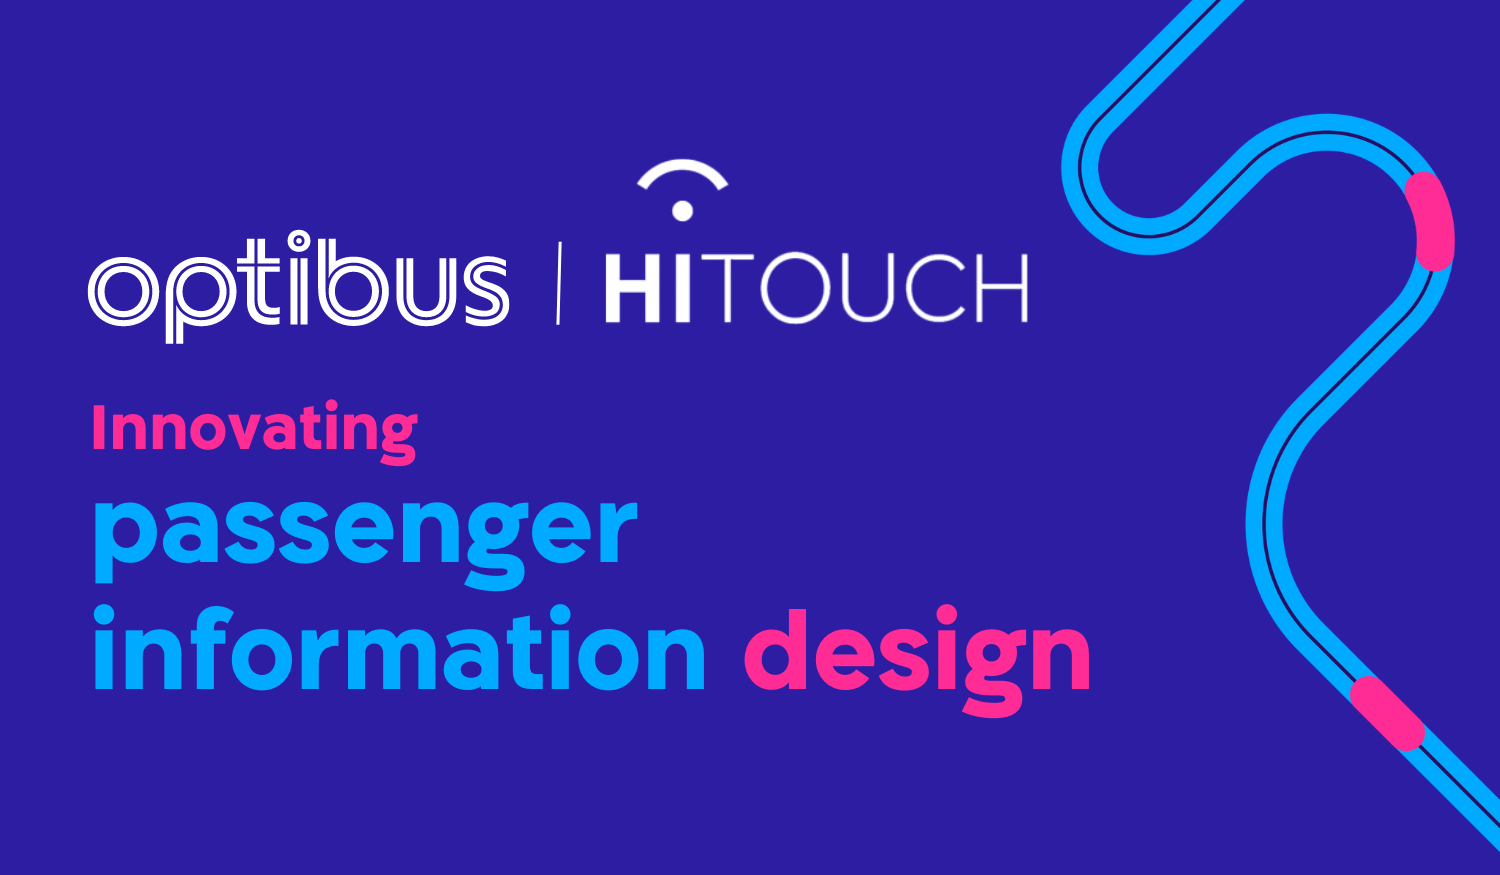 HiTouch - Optibus partnership blog (1500 × 875 px) (1)